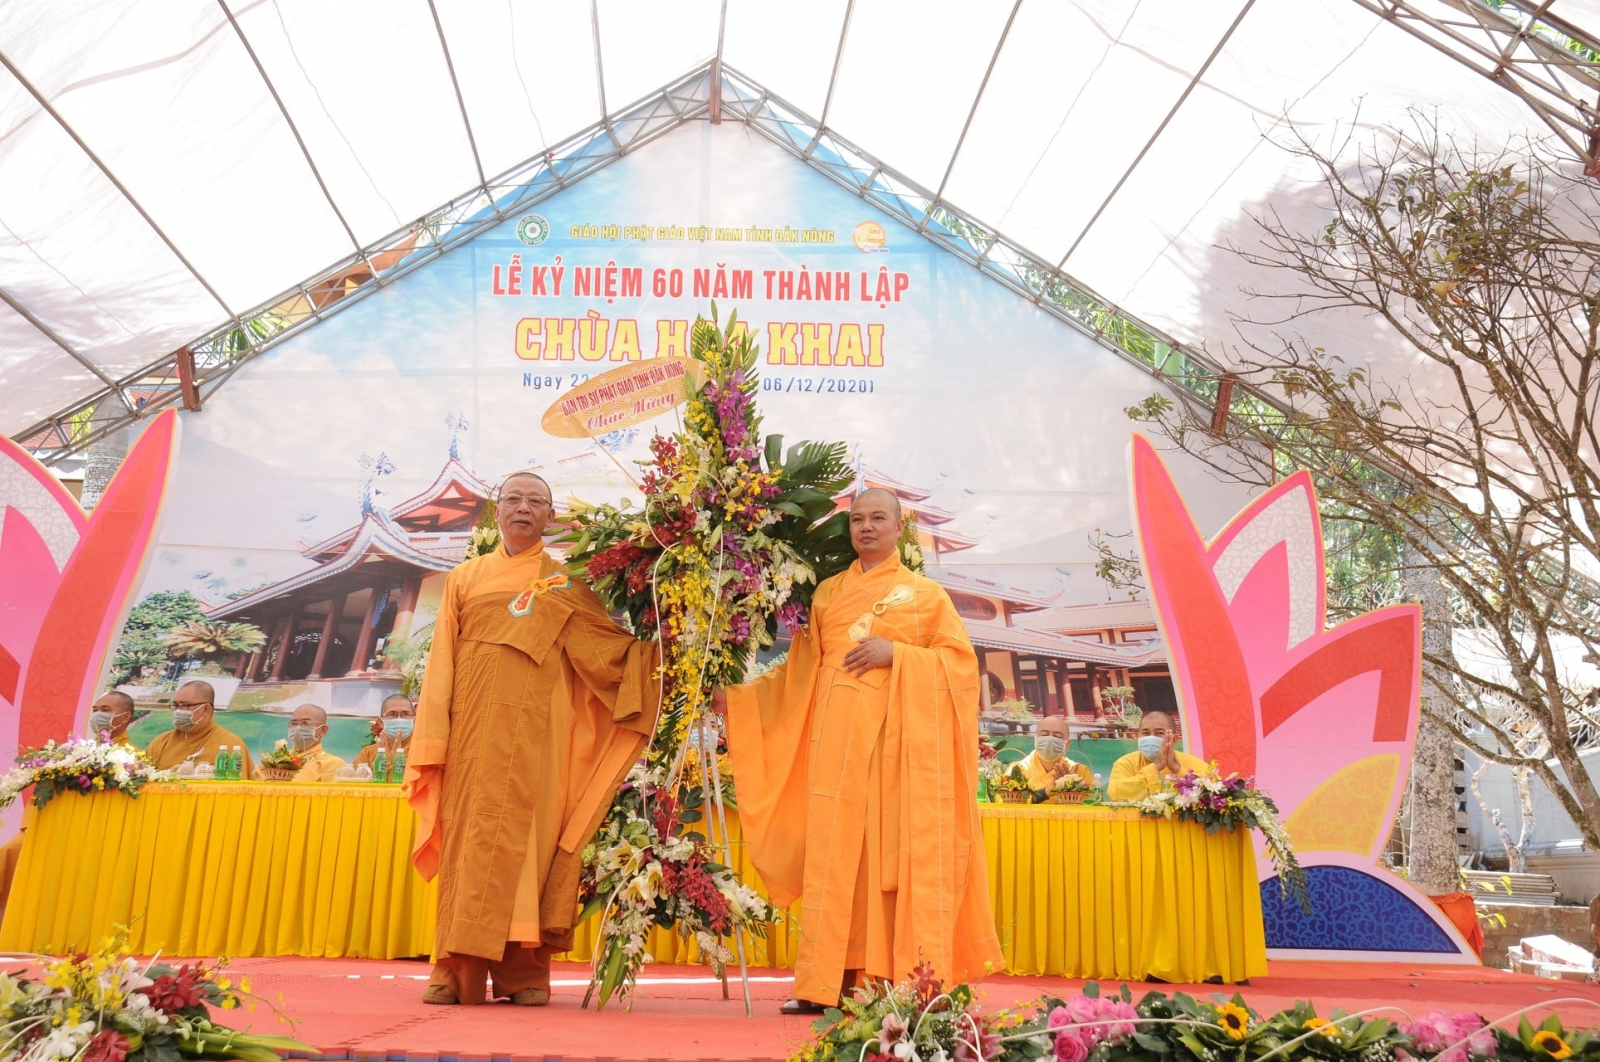 Đăk Nông: Đại lễ Kỷ niệm 60 năm thành lập chùa Hoa Khai